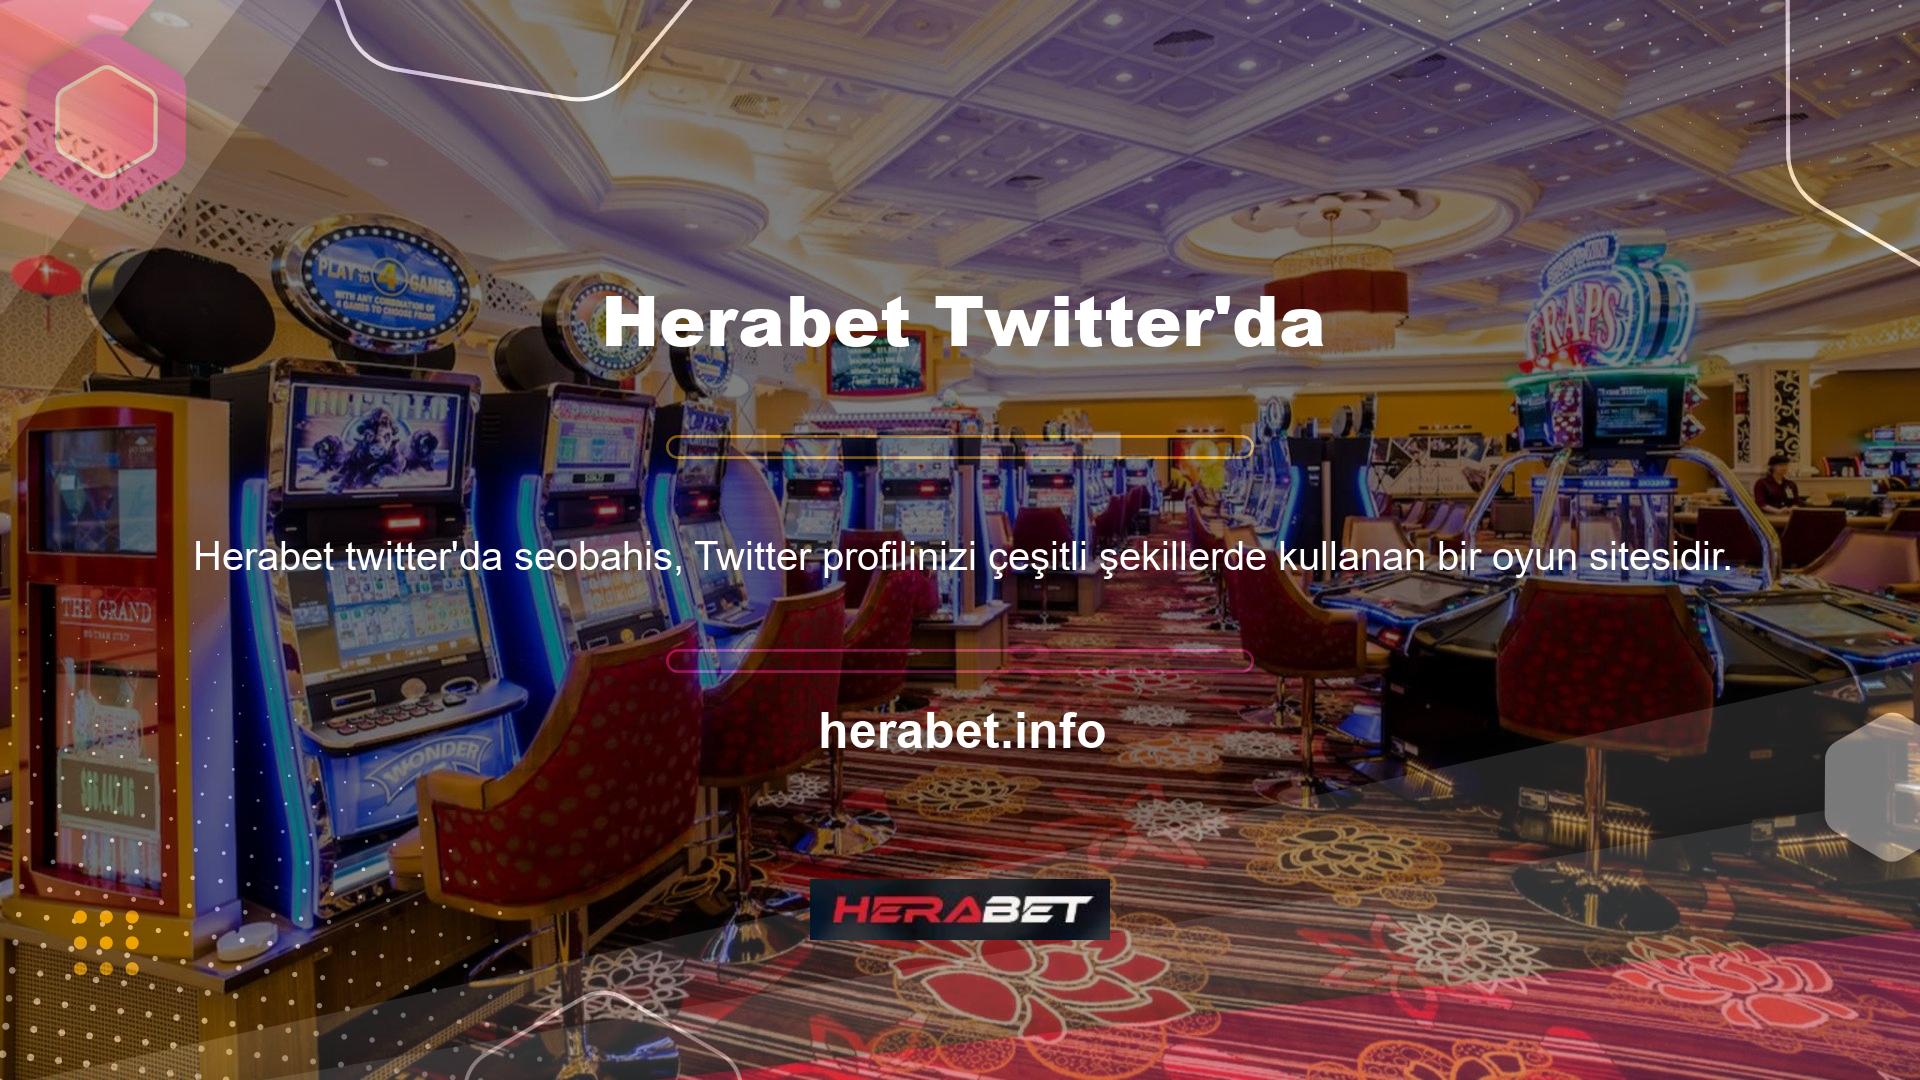 Herabet tarafından kullanılan alan adı, diğer casino siteleri gibi her zaman bloke edilir, bu nedenle size her zaman farklı bir adresten hizmet verilir